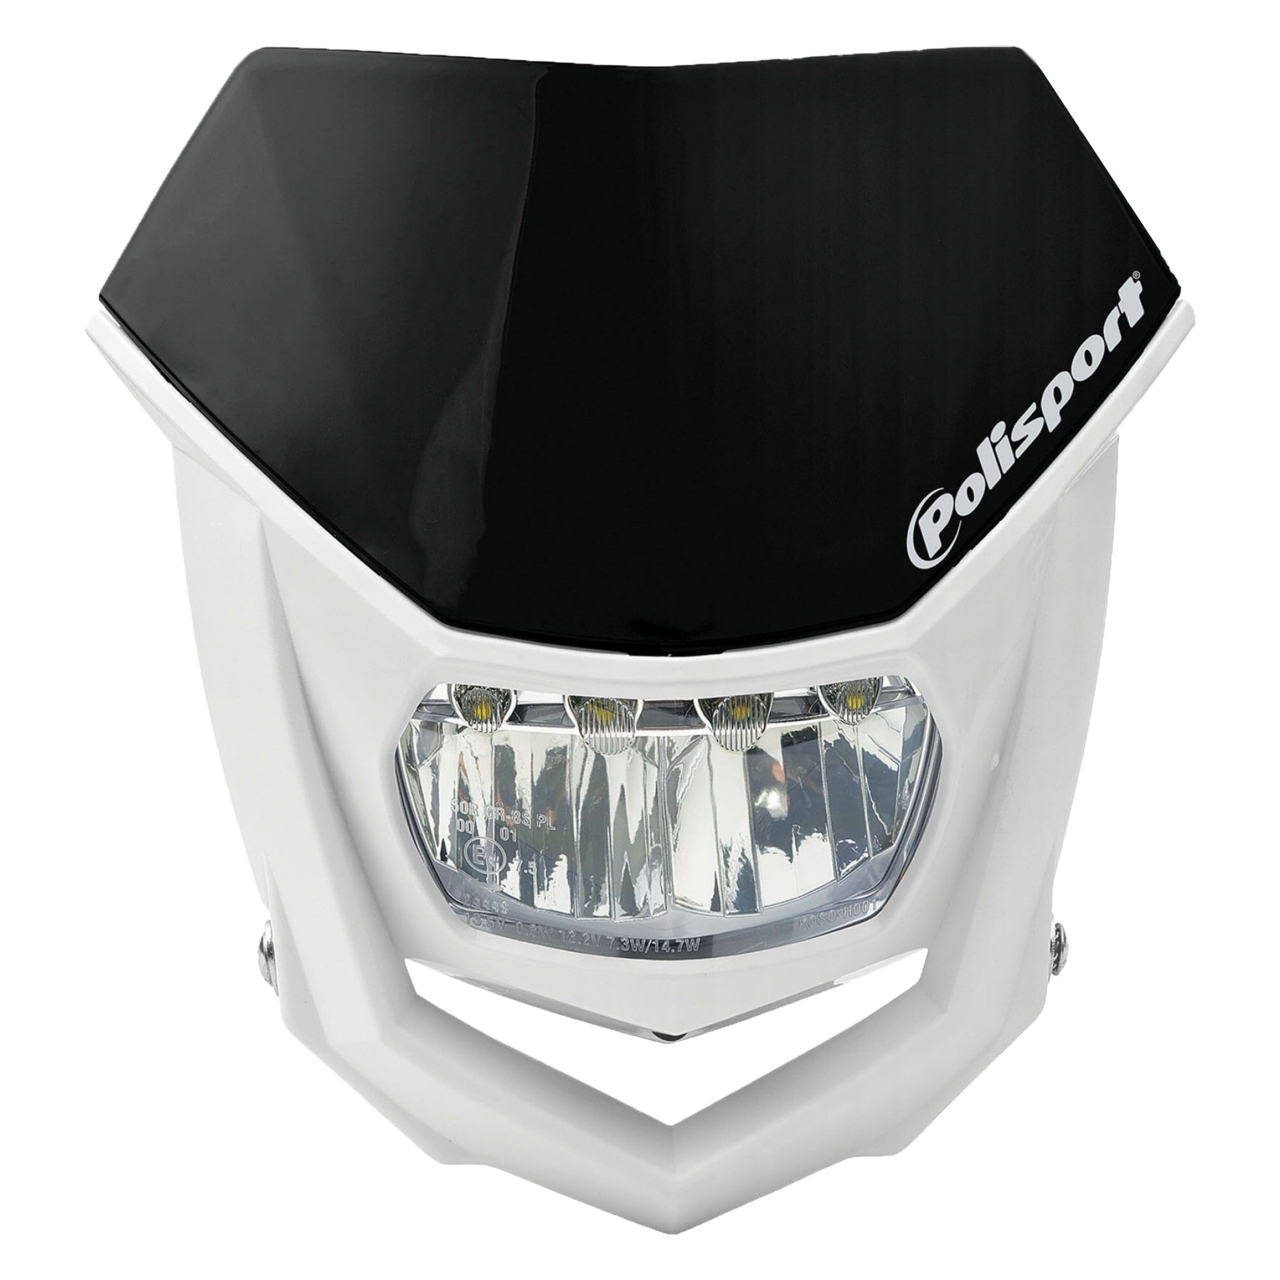 Careta Halo LED homologada Polisport blanco 8667100001 - Moto Recambio